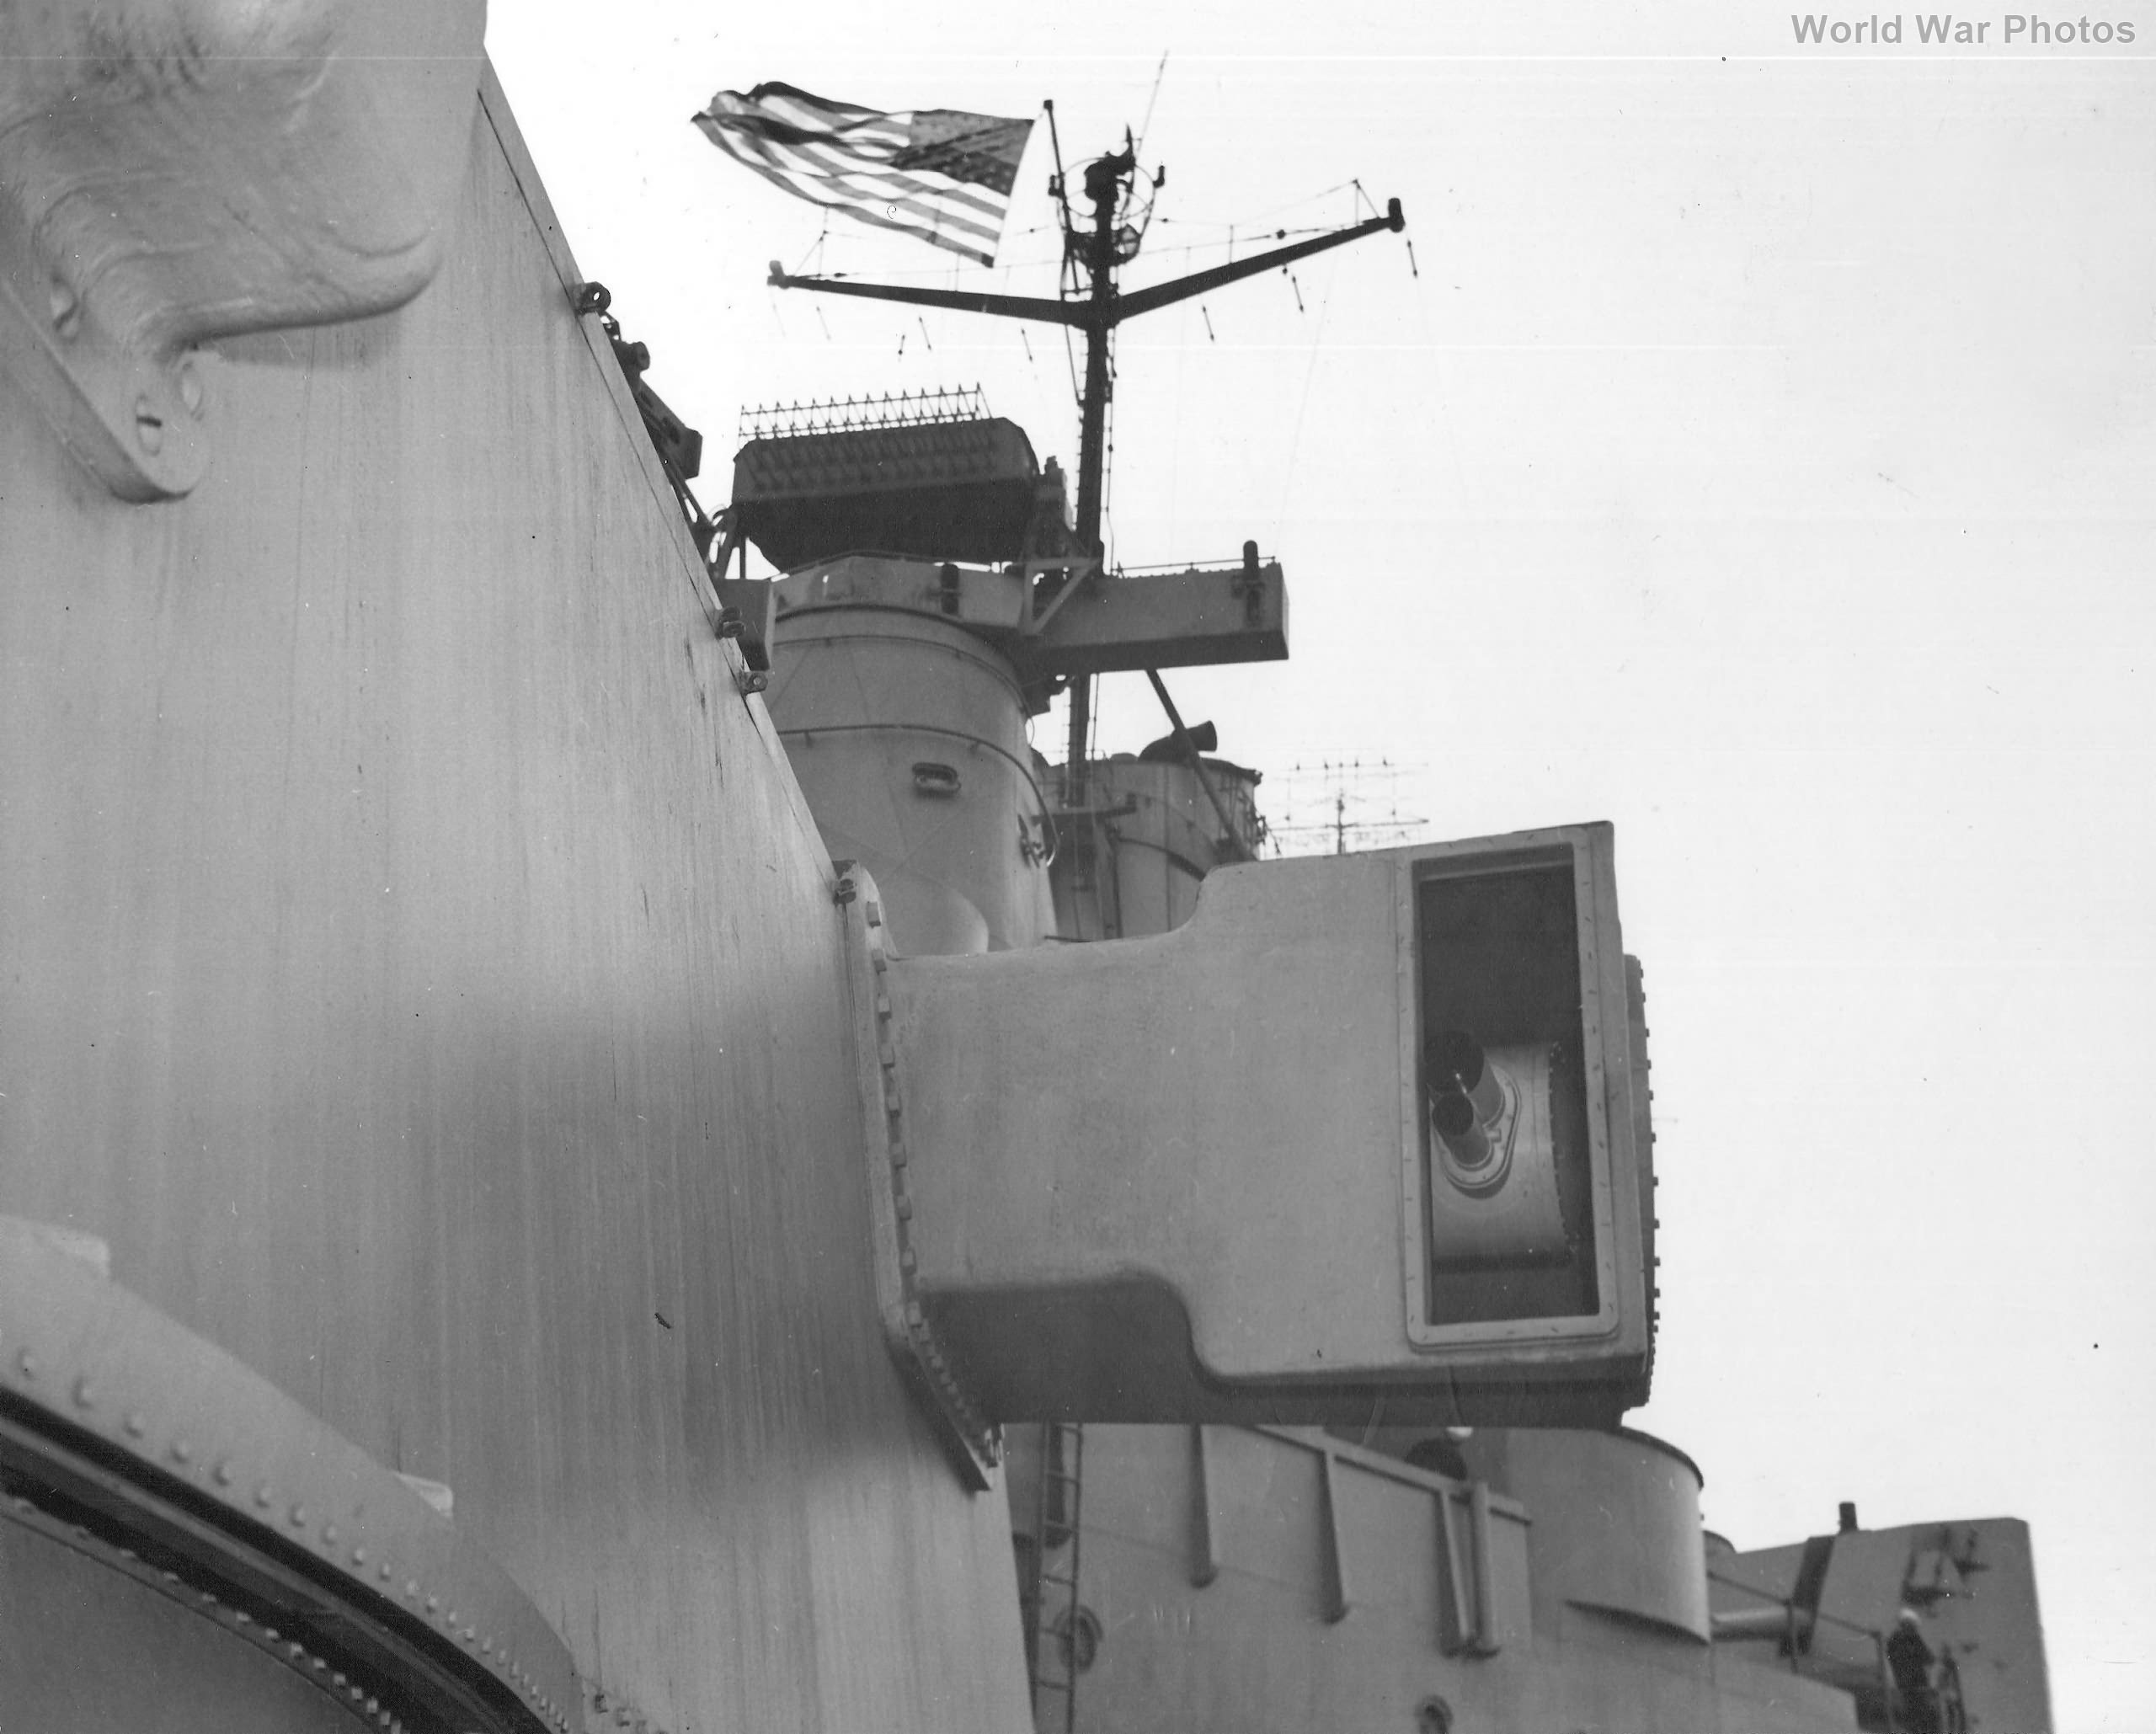 rangefinder of battleship USS Iowa